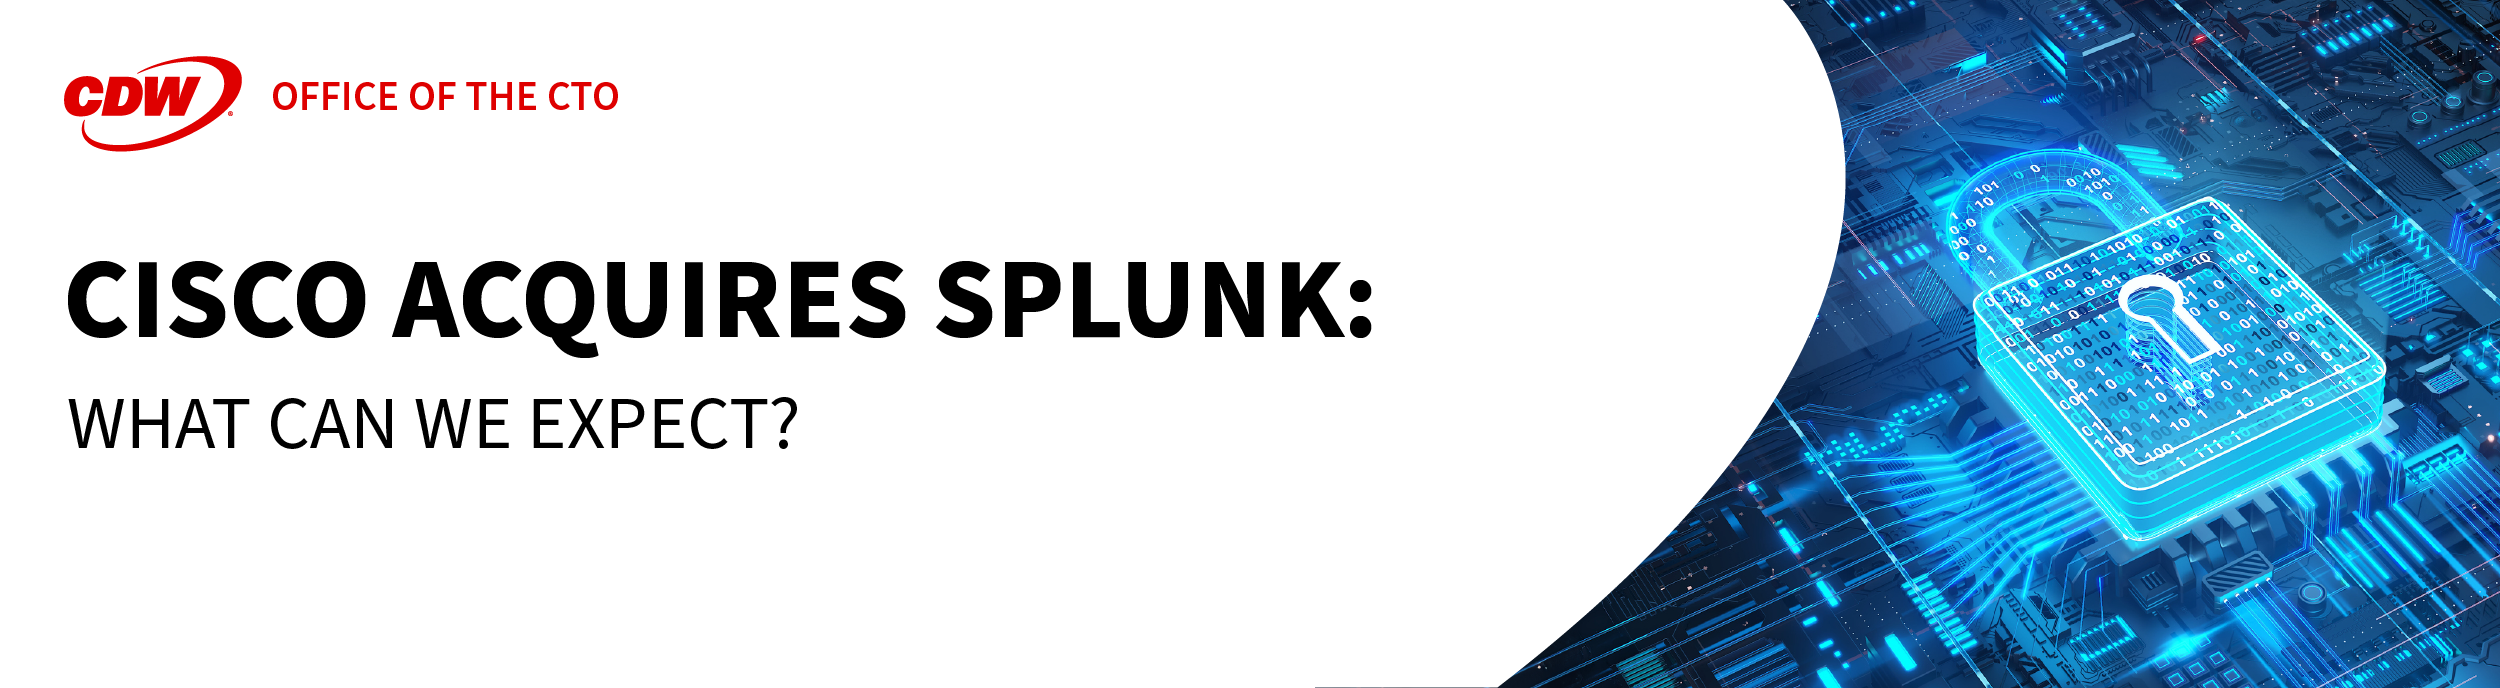 Cisco Acquires Splunk